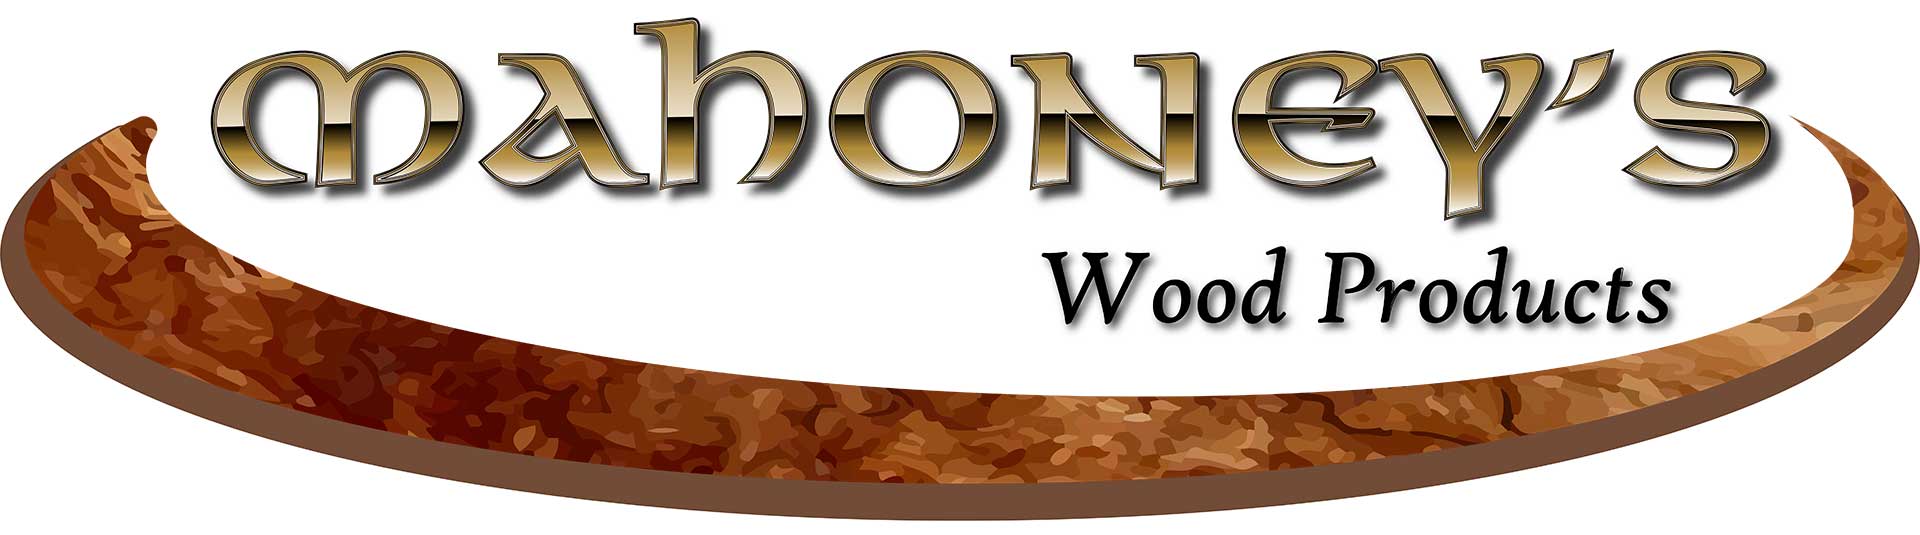 Mahoney Logo